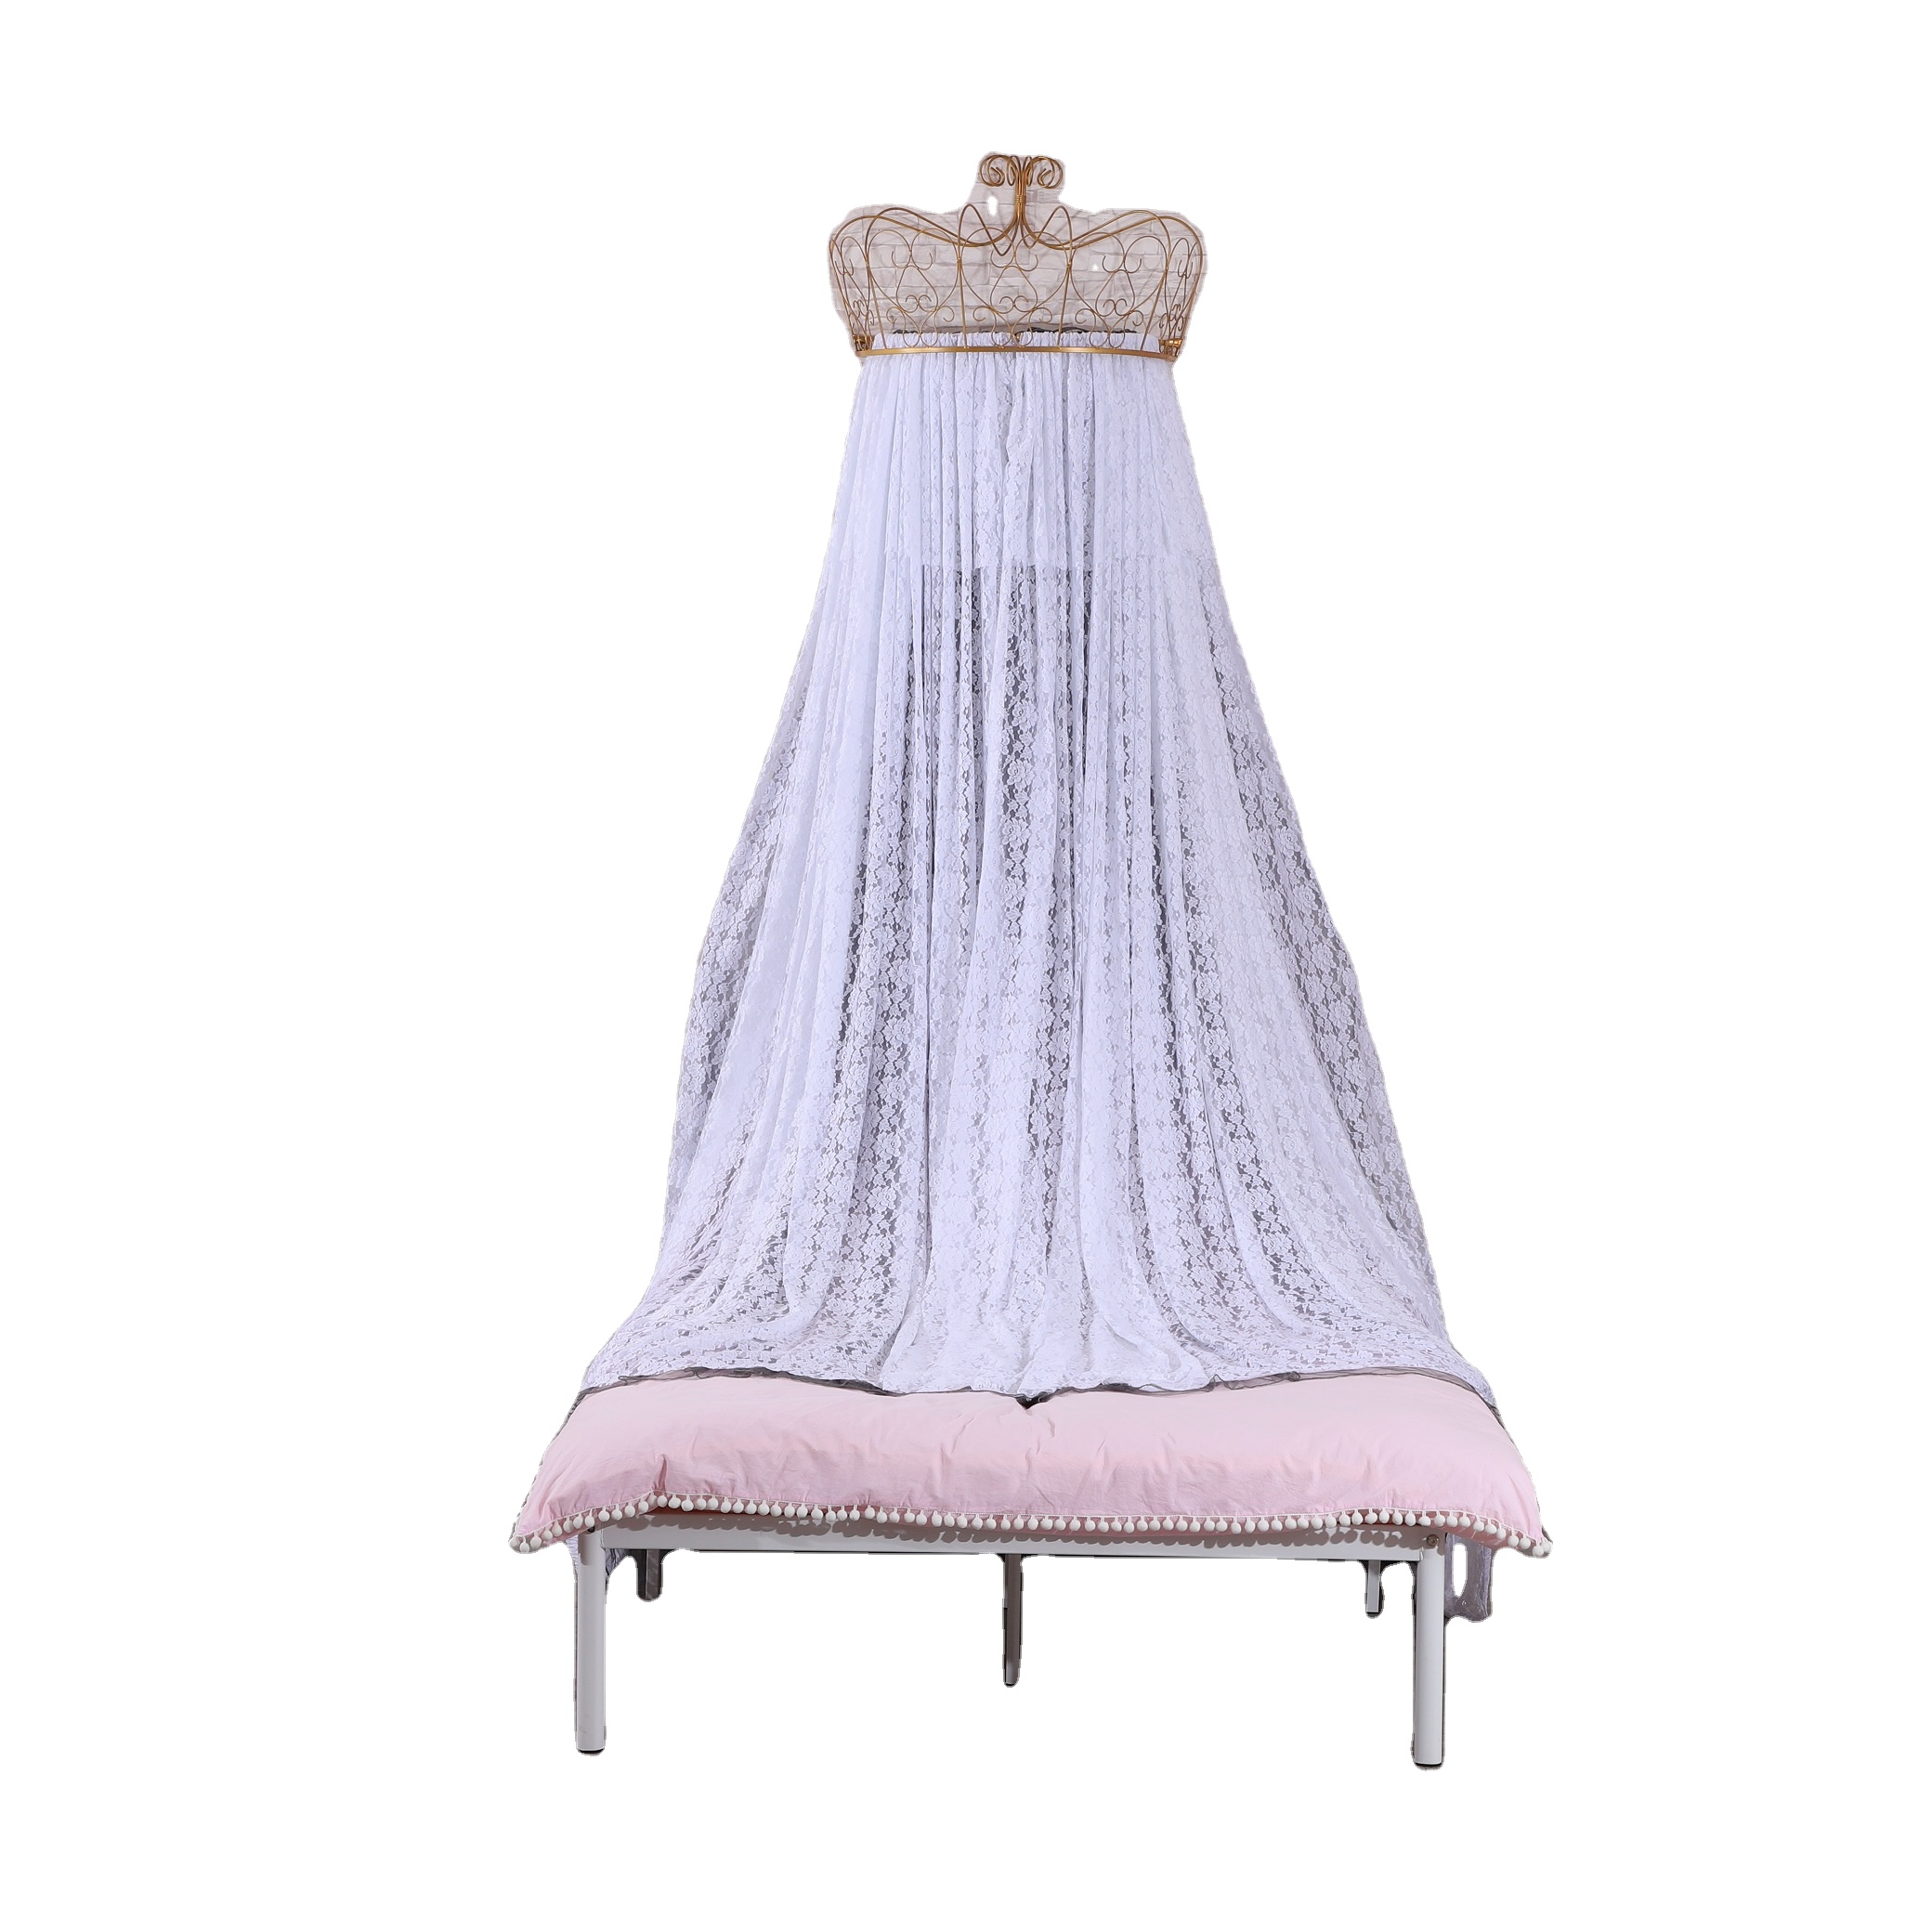 Neueste Design Princess Crown Top Moskitonetze Spitze Bett Vorhänge